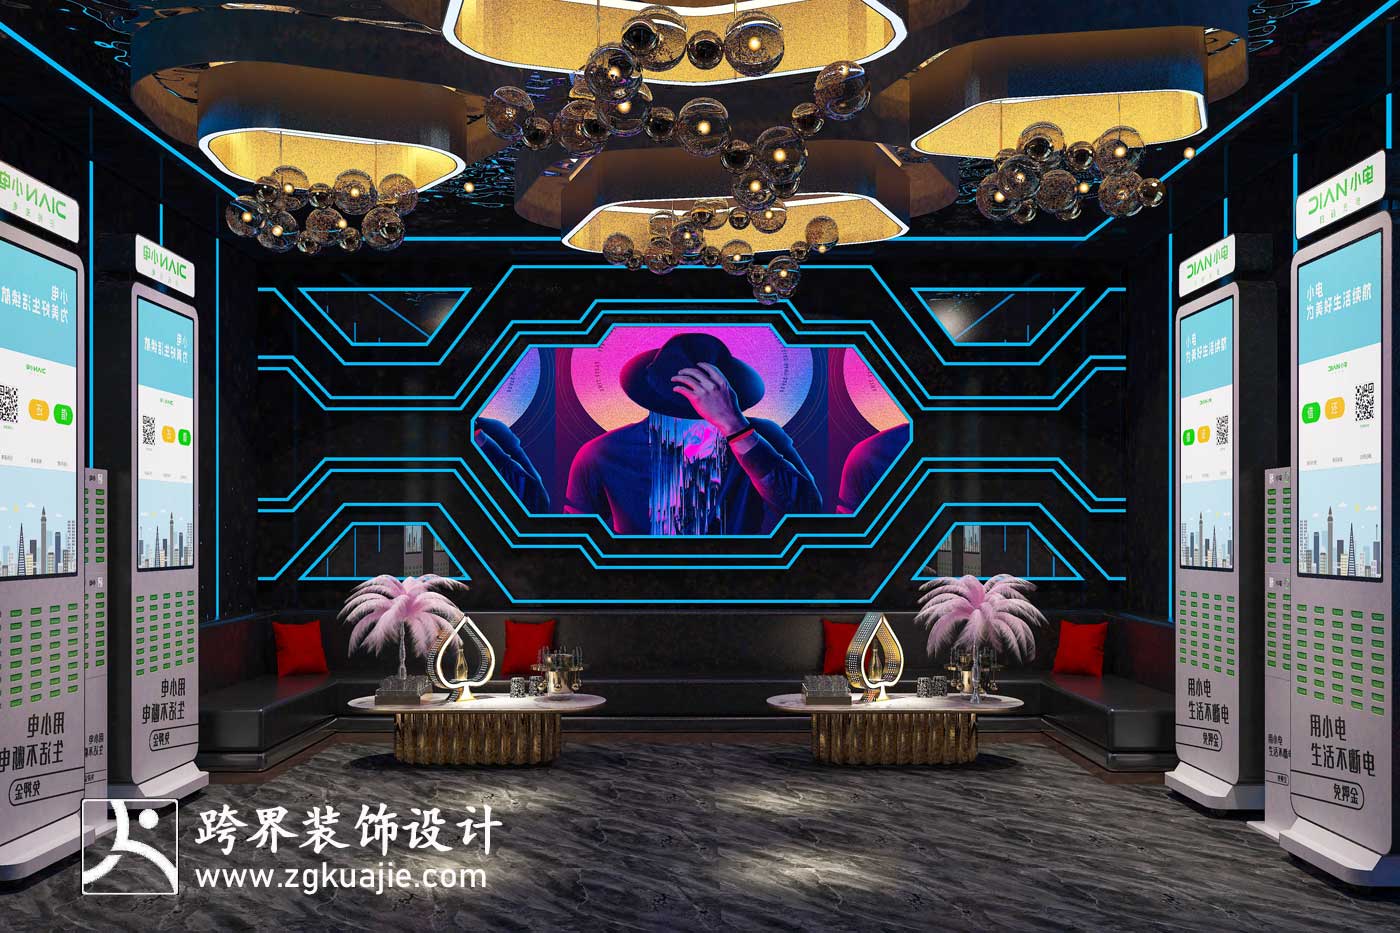 海南跨界装饰设计徐闻县天空酒吧